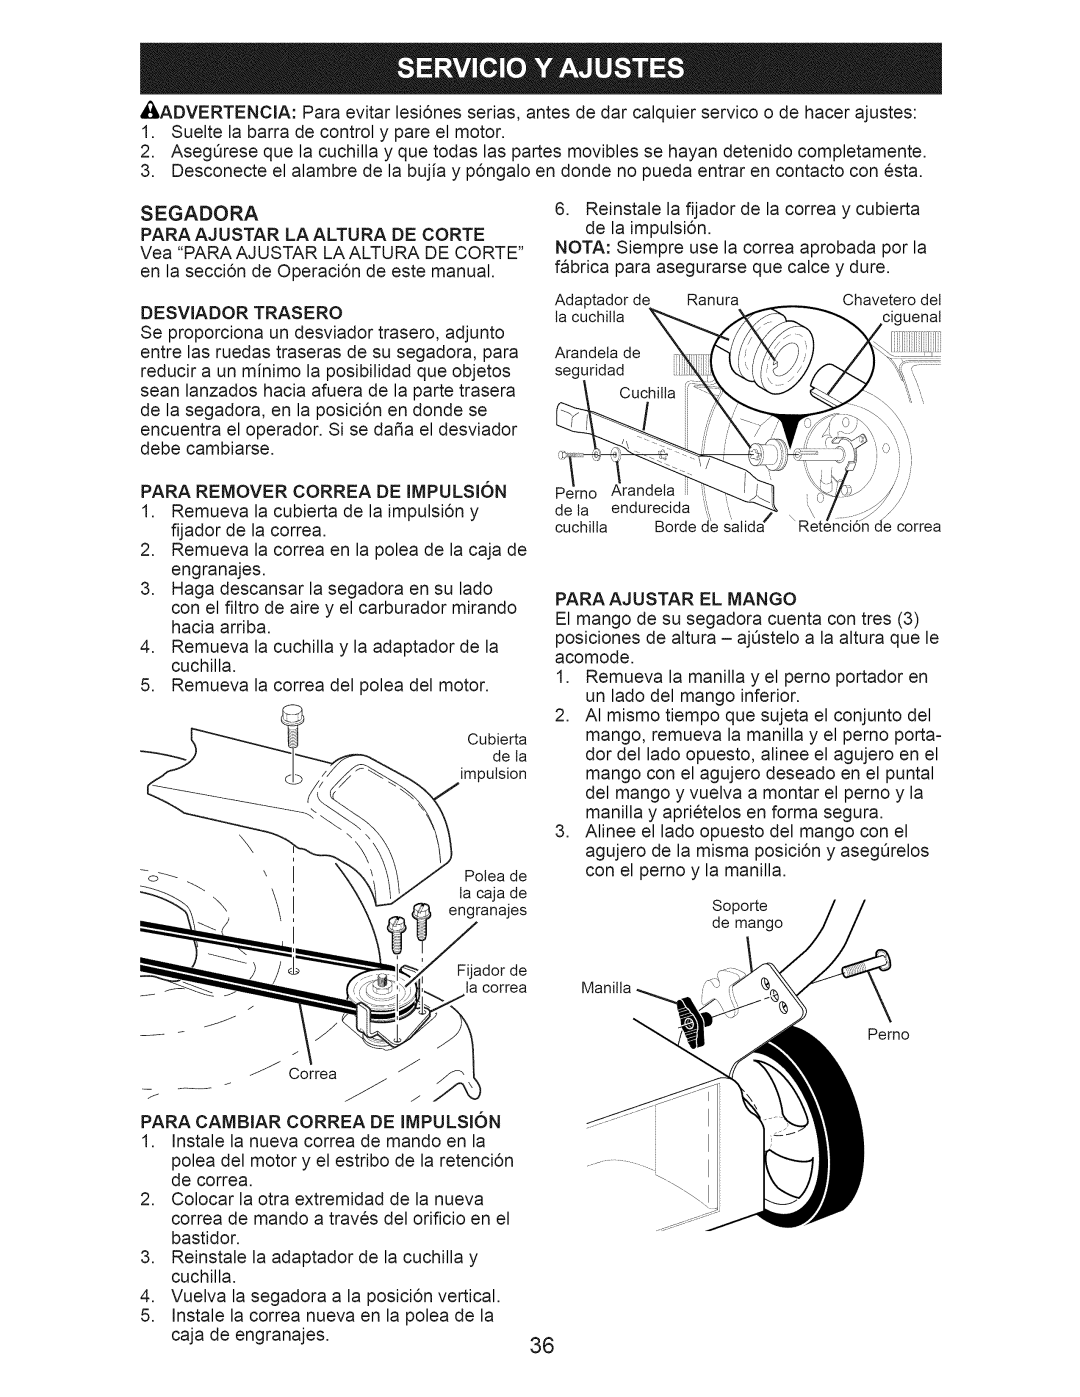 Craftsman 917.376242 manual Desviador Trasero, Para Remover Correa DE Impulsion, Para Ajustar EL Mango 